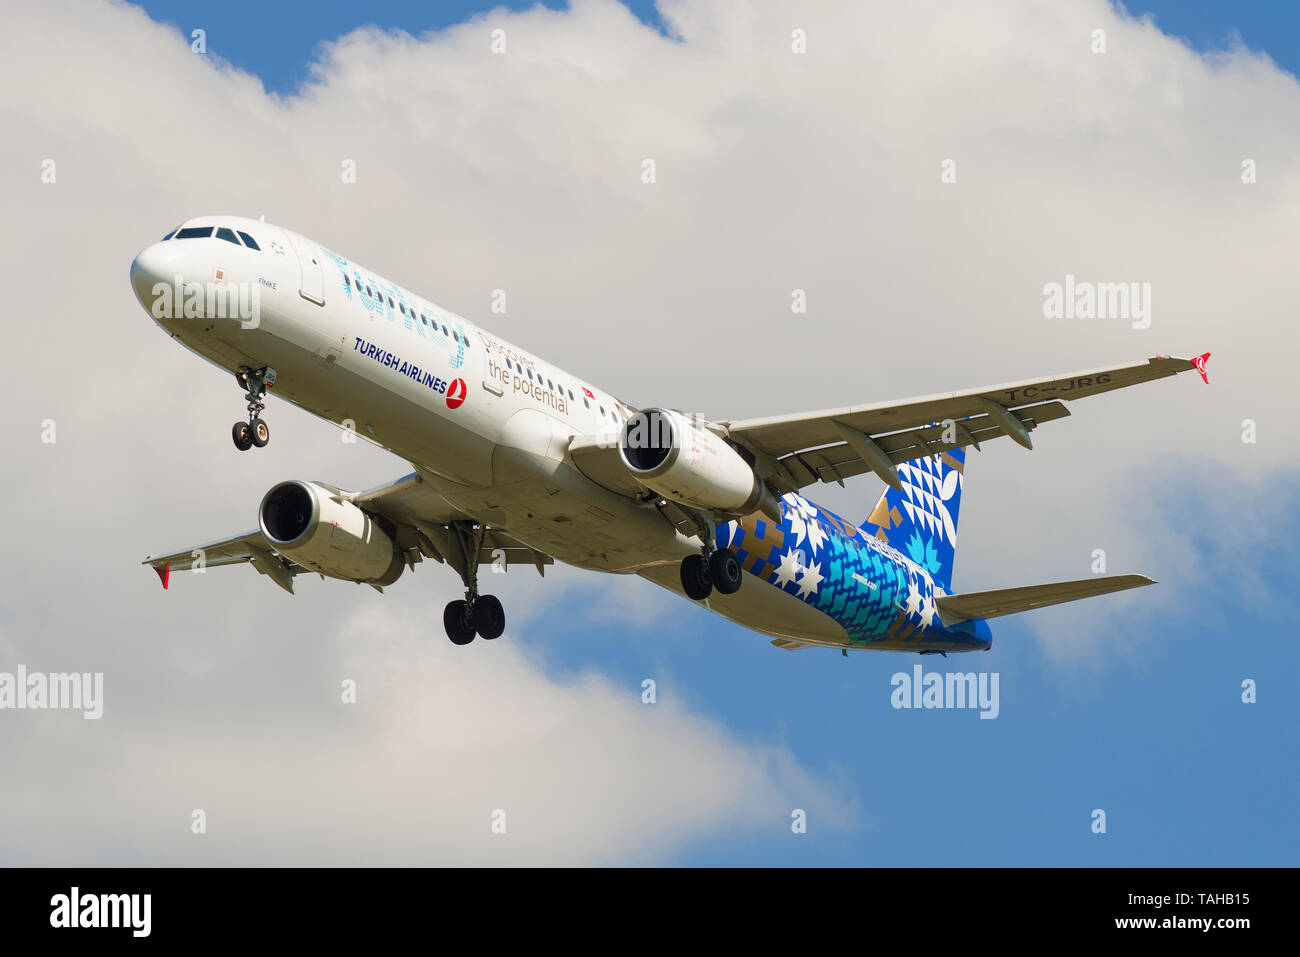 SAINT-Petersburg, Russia - 13 Maggio 2019: Airbus A321-200 (TC-JRG) della Turkish Airlines contro un cielo nuvoloso Foto Stock